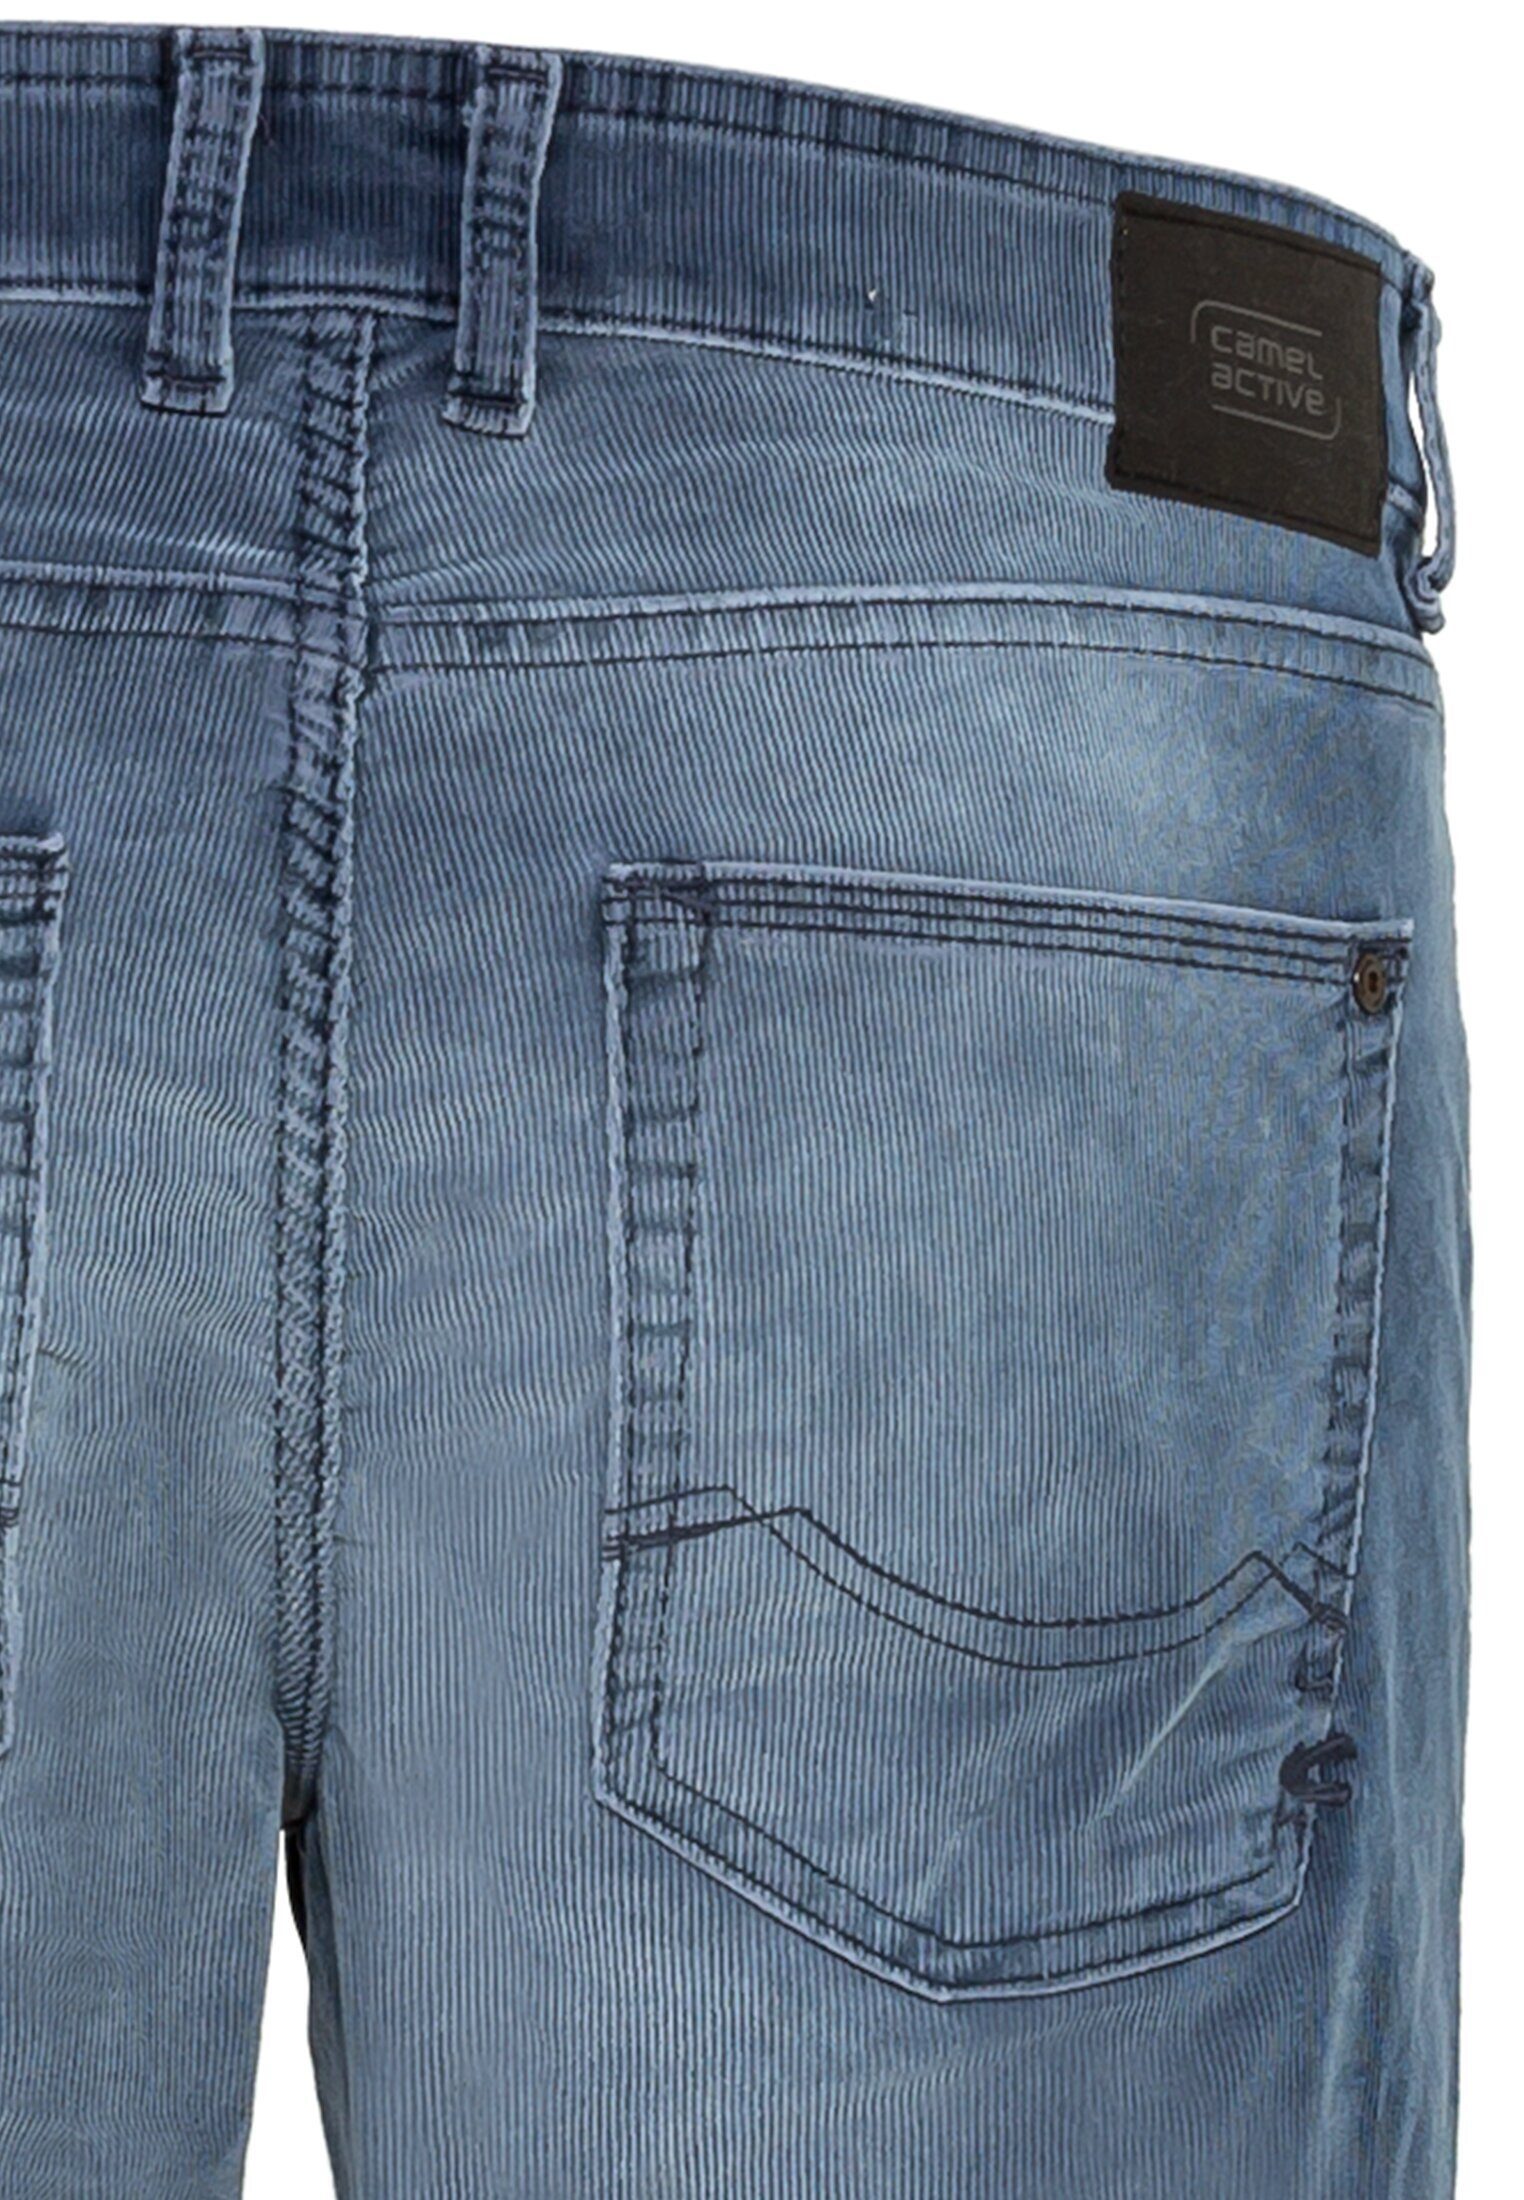 Blau active Fit Cordhose 5-Pocket-Jeans camel Slim